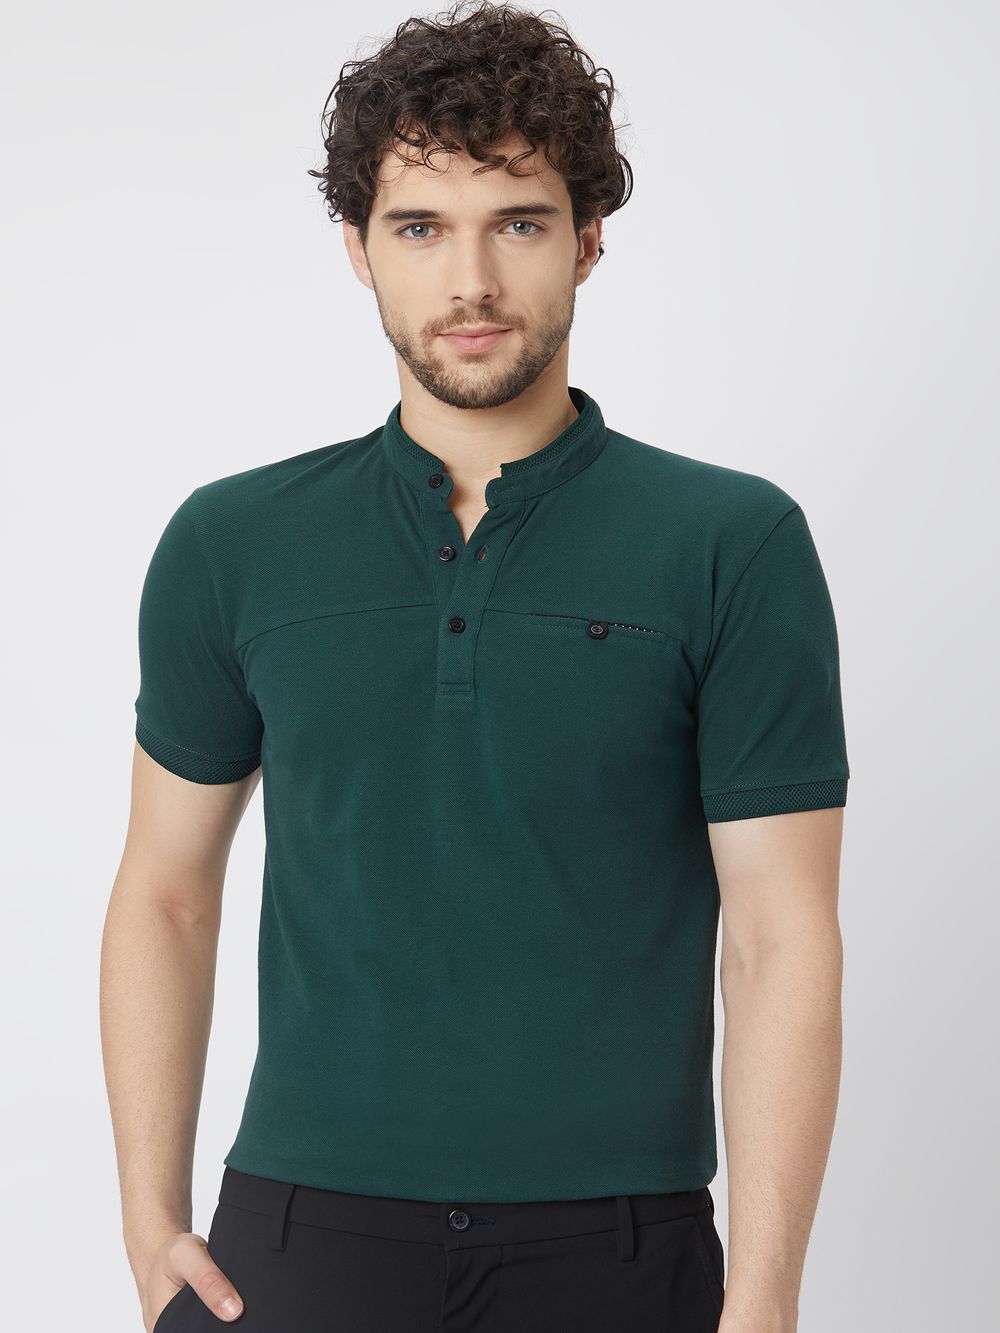 Green & Black Cut & Sew Pique Henley T-Shirt